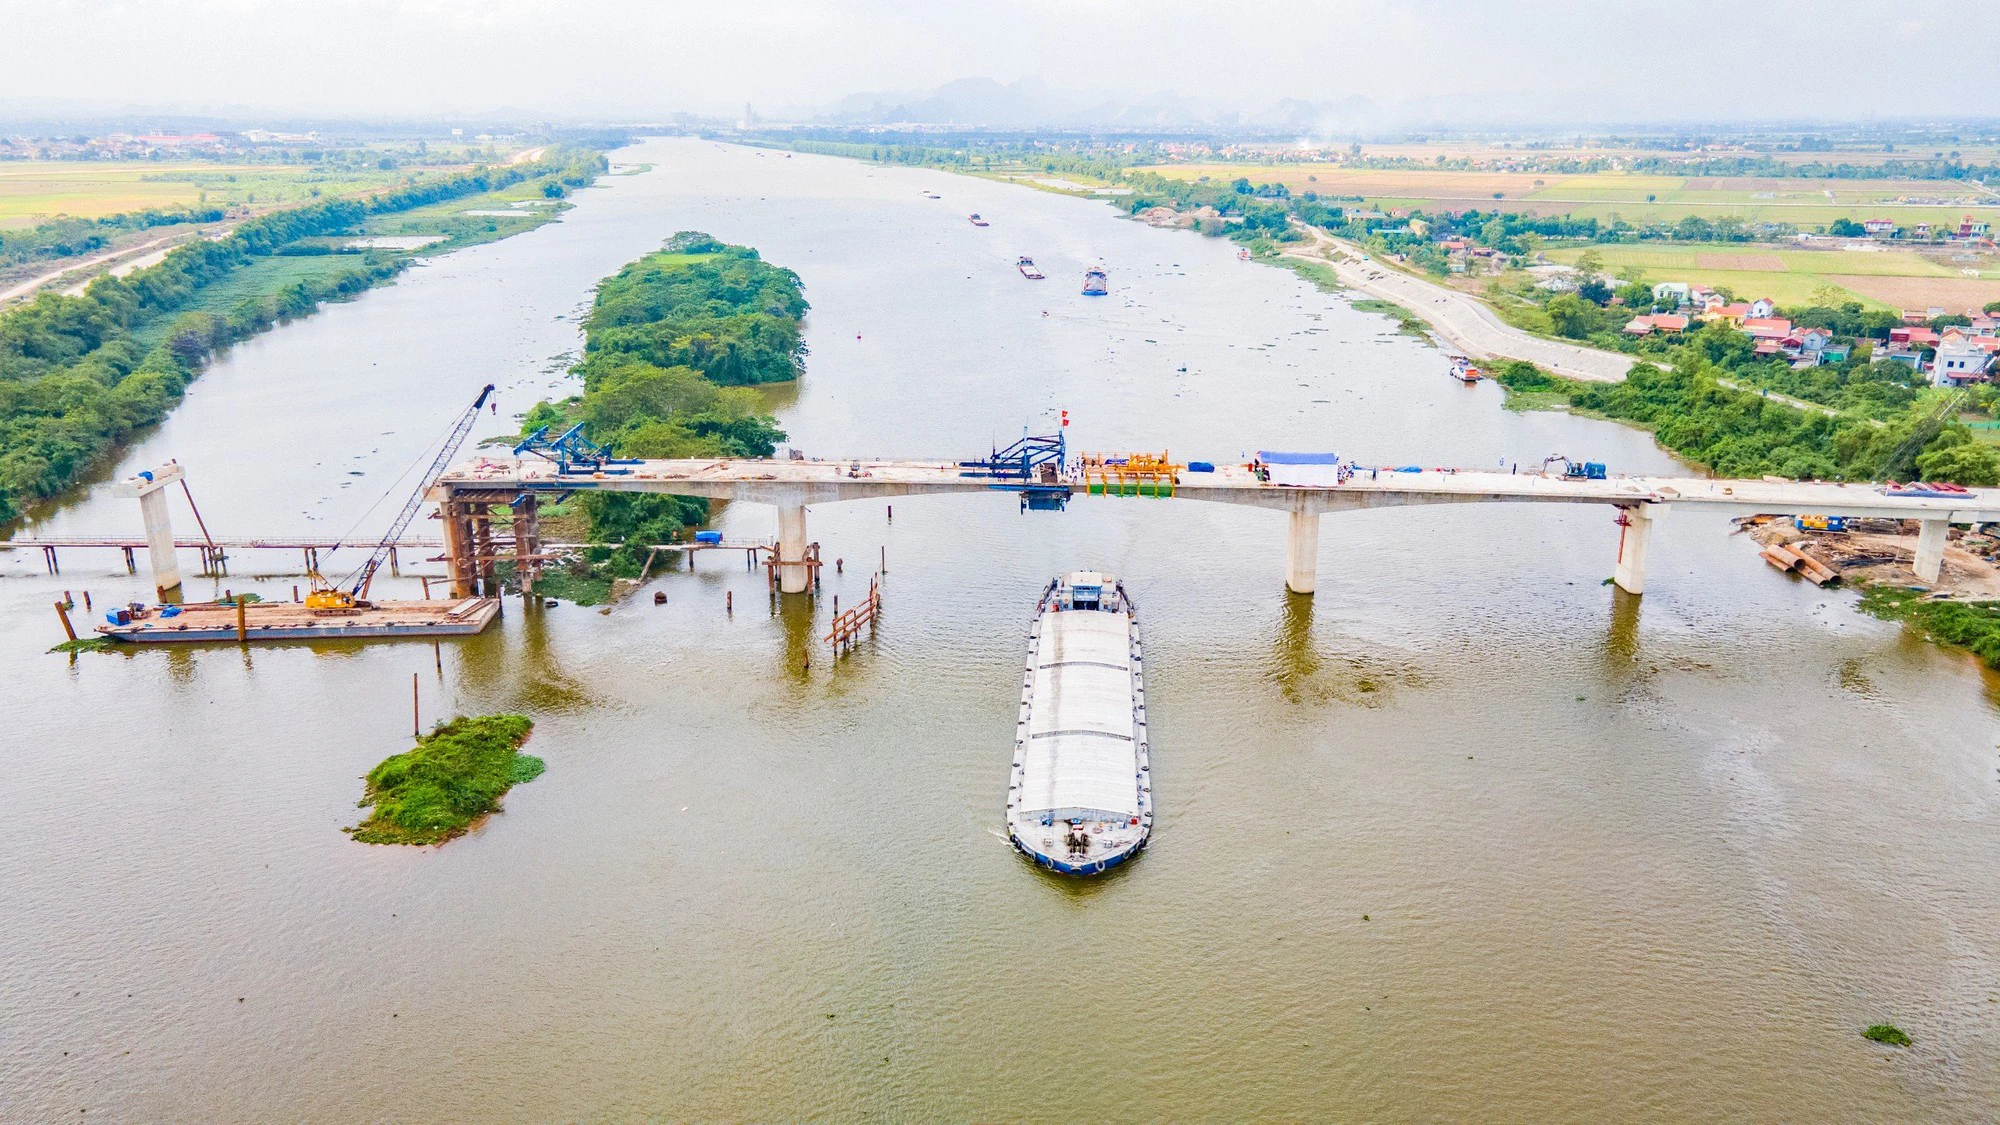 Hợp long cầu Bến Mới nối Nam Định - Ninh Bình - Ảnh 9.